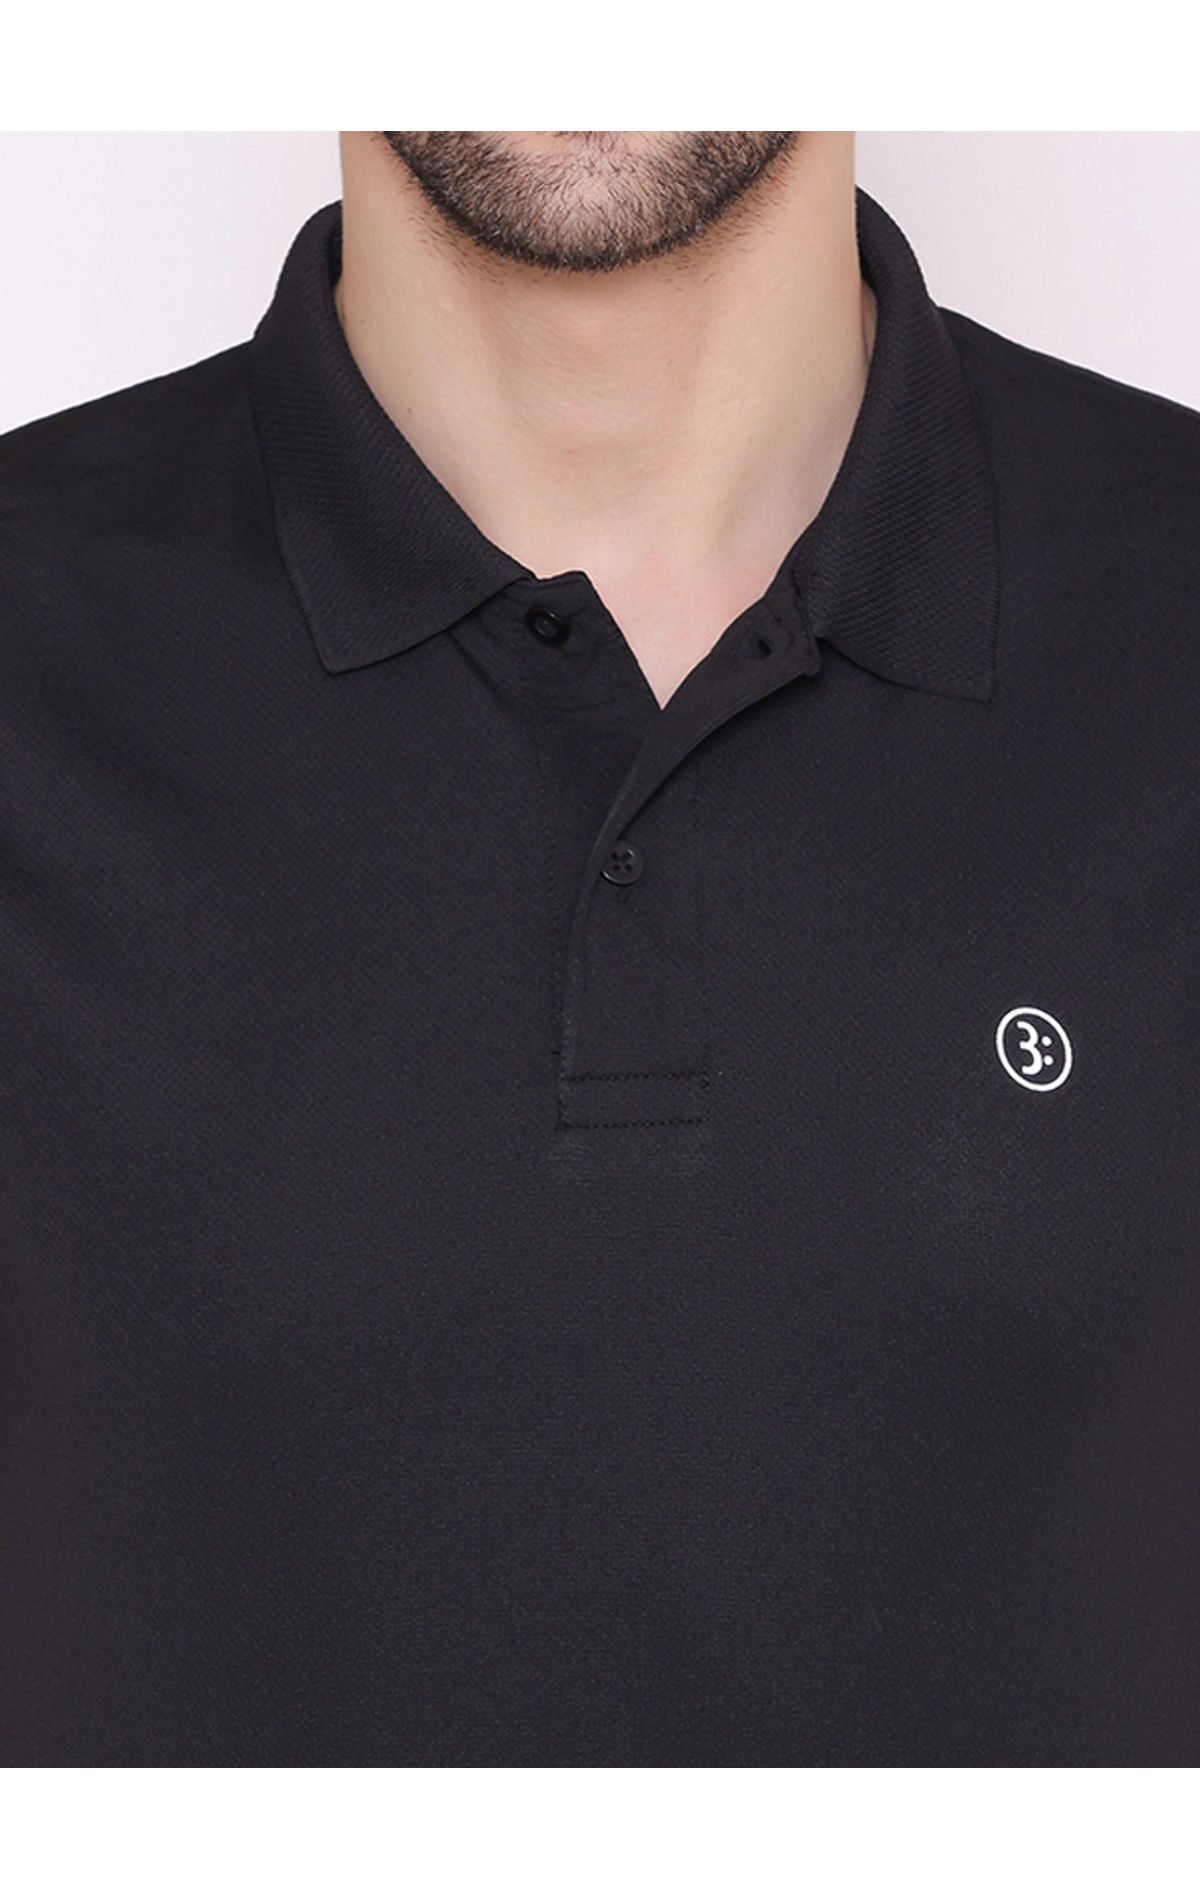 Bodyactive Solid Casual Half Sleeve Cotton Rich V neck Pique Polo T-Shirt  for Men-TS52